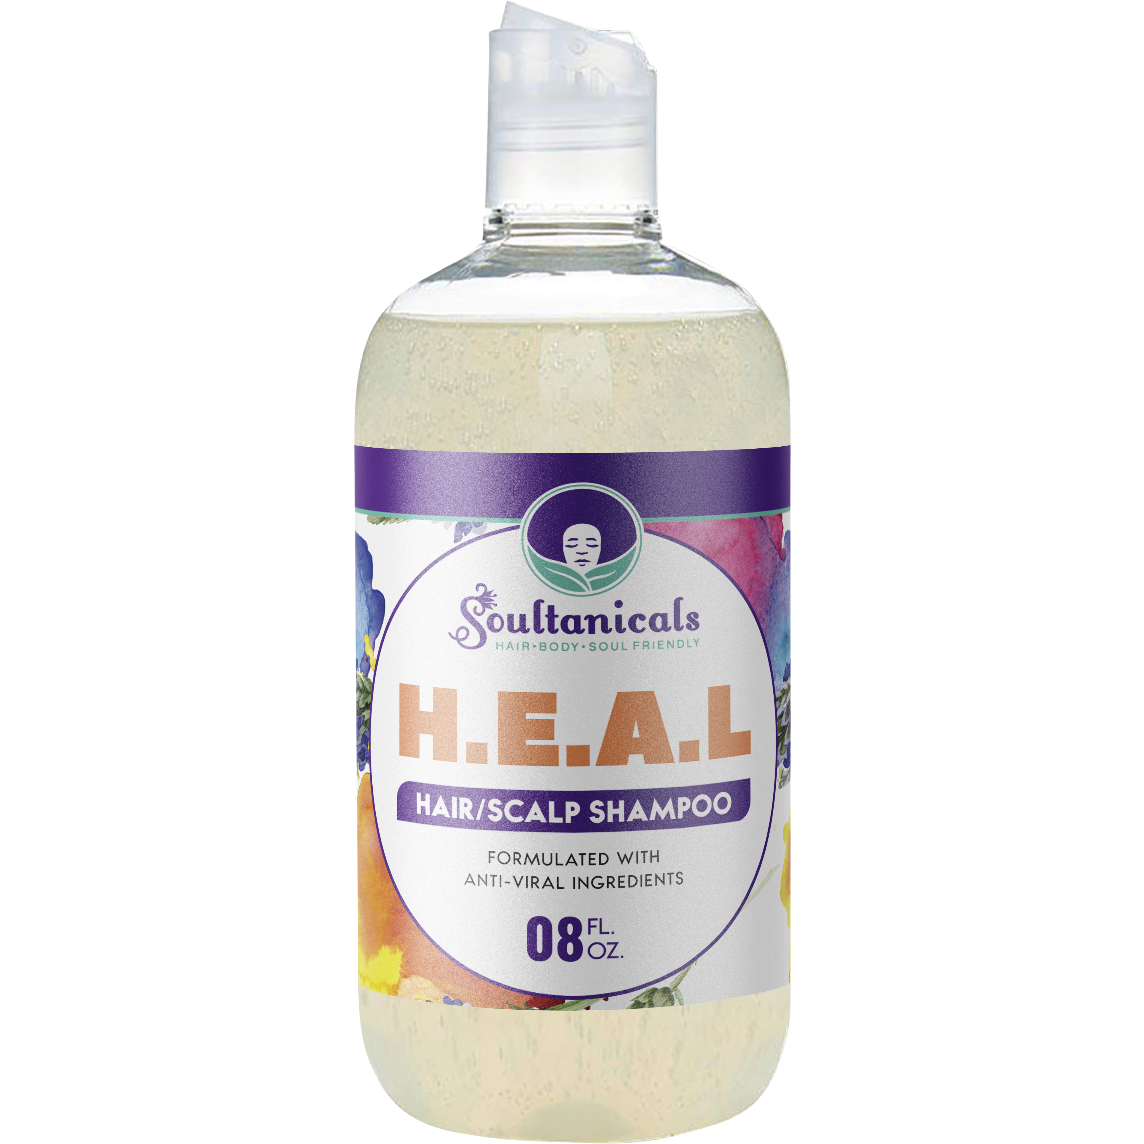 H.E.A.L. Hair/Scalp Shampoo